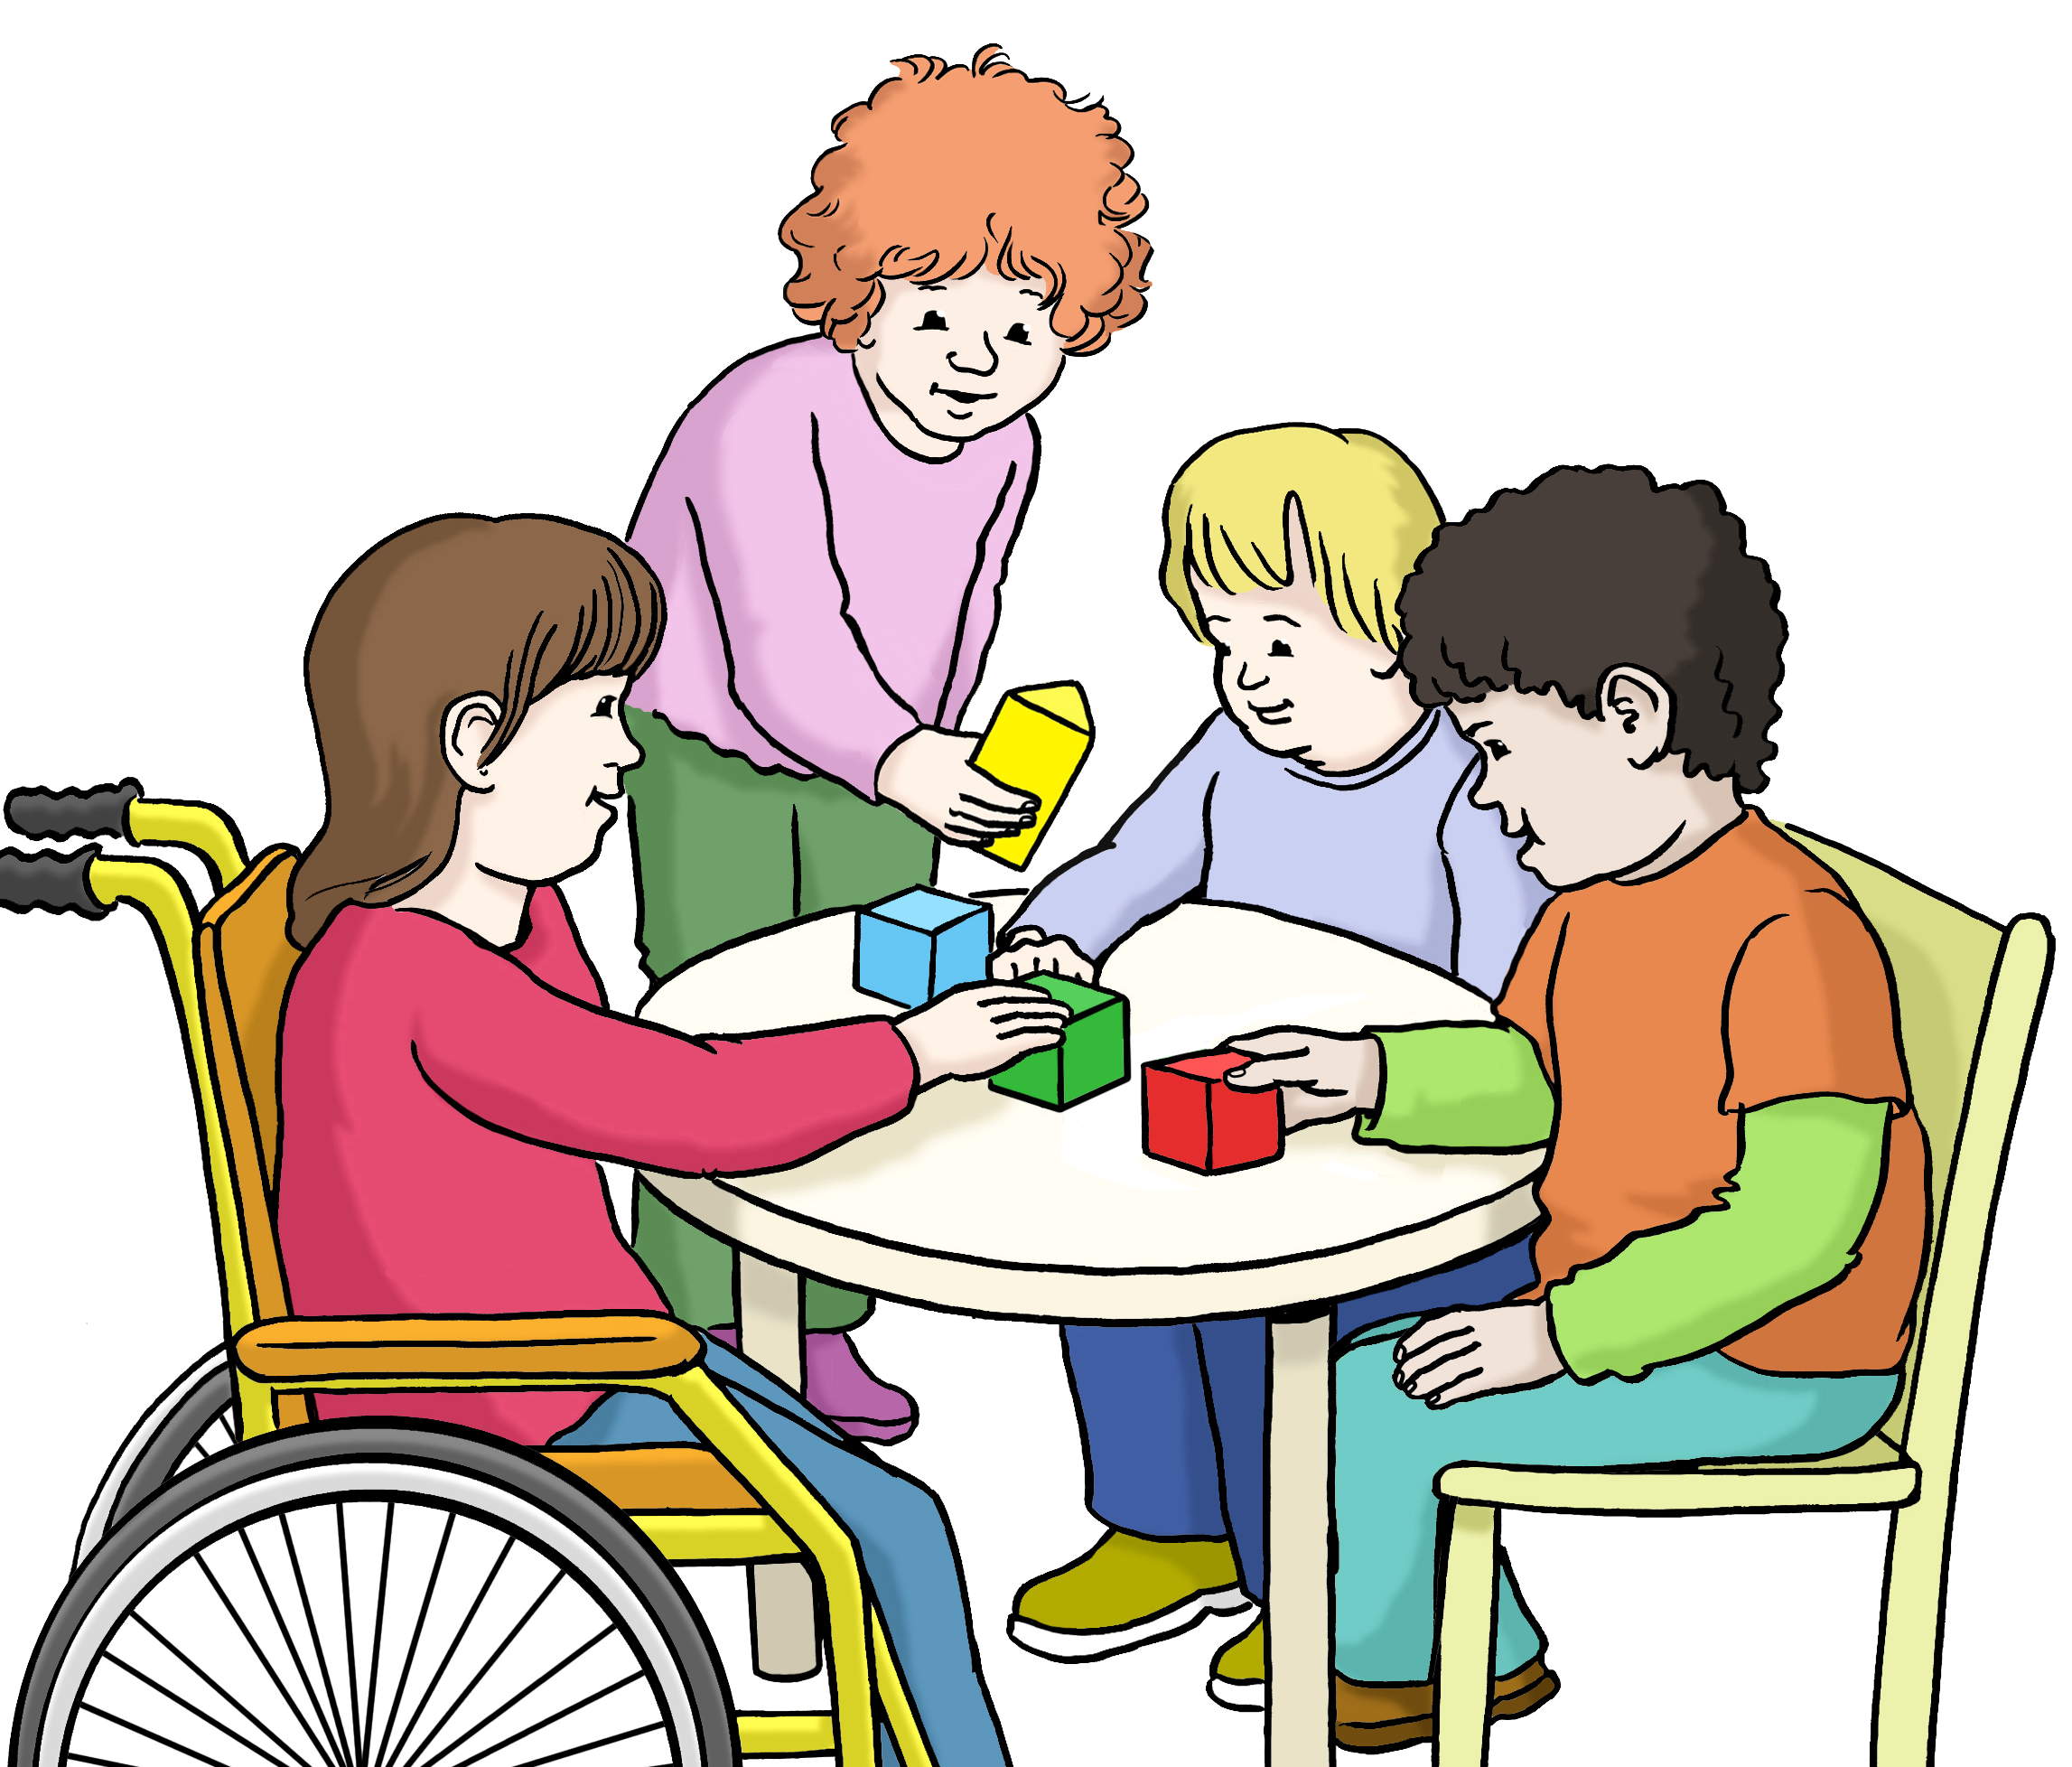 Leichte Sprache Bild: vier Kinder spielen mit Bauklötzen an einem Tisch.